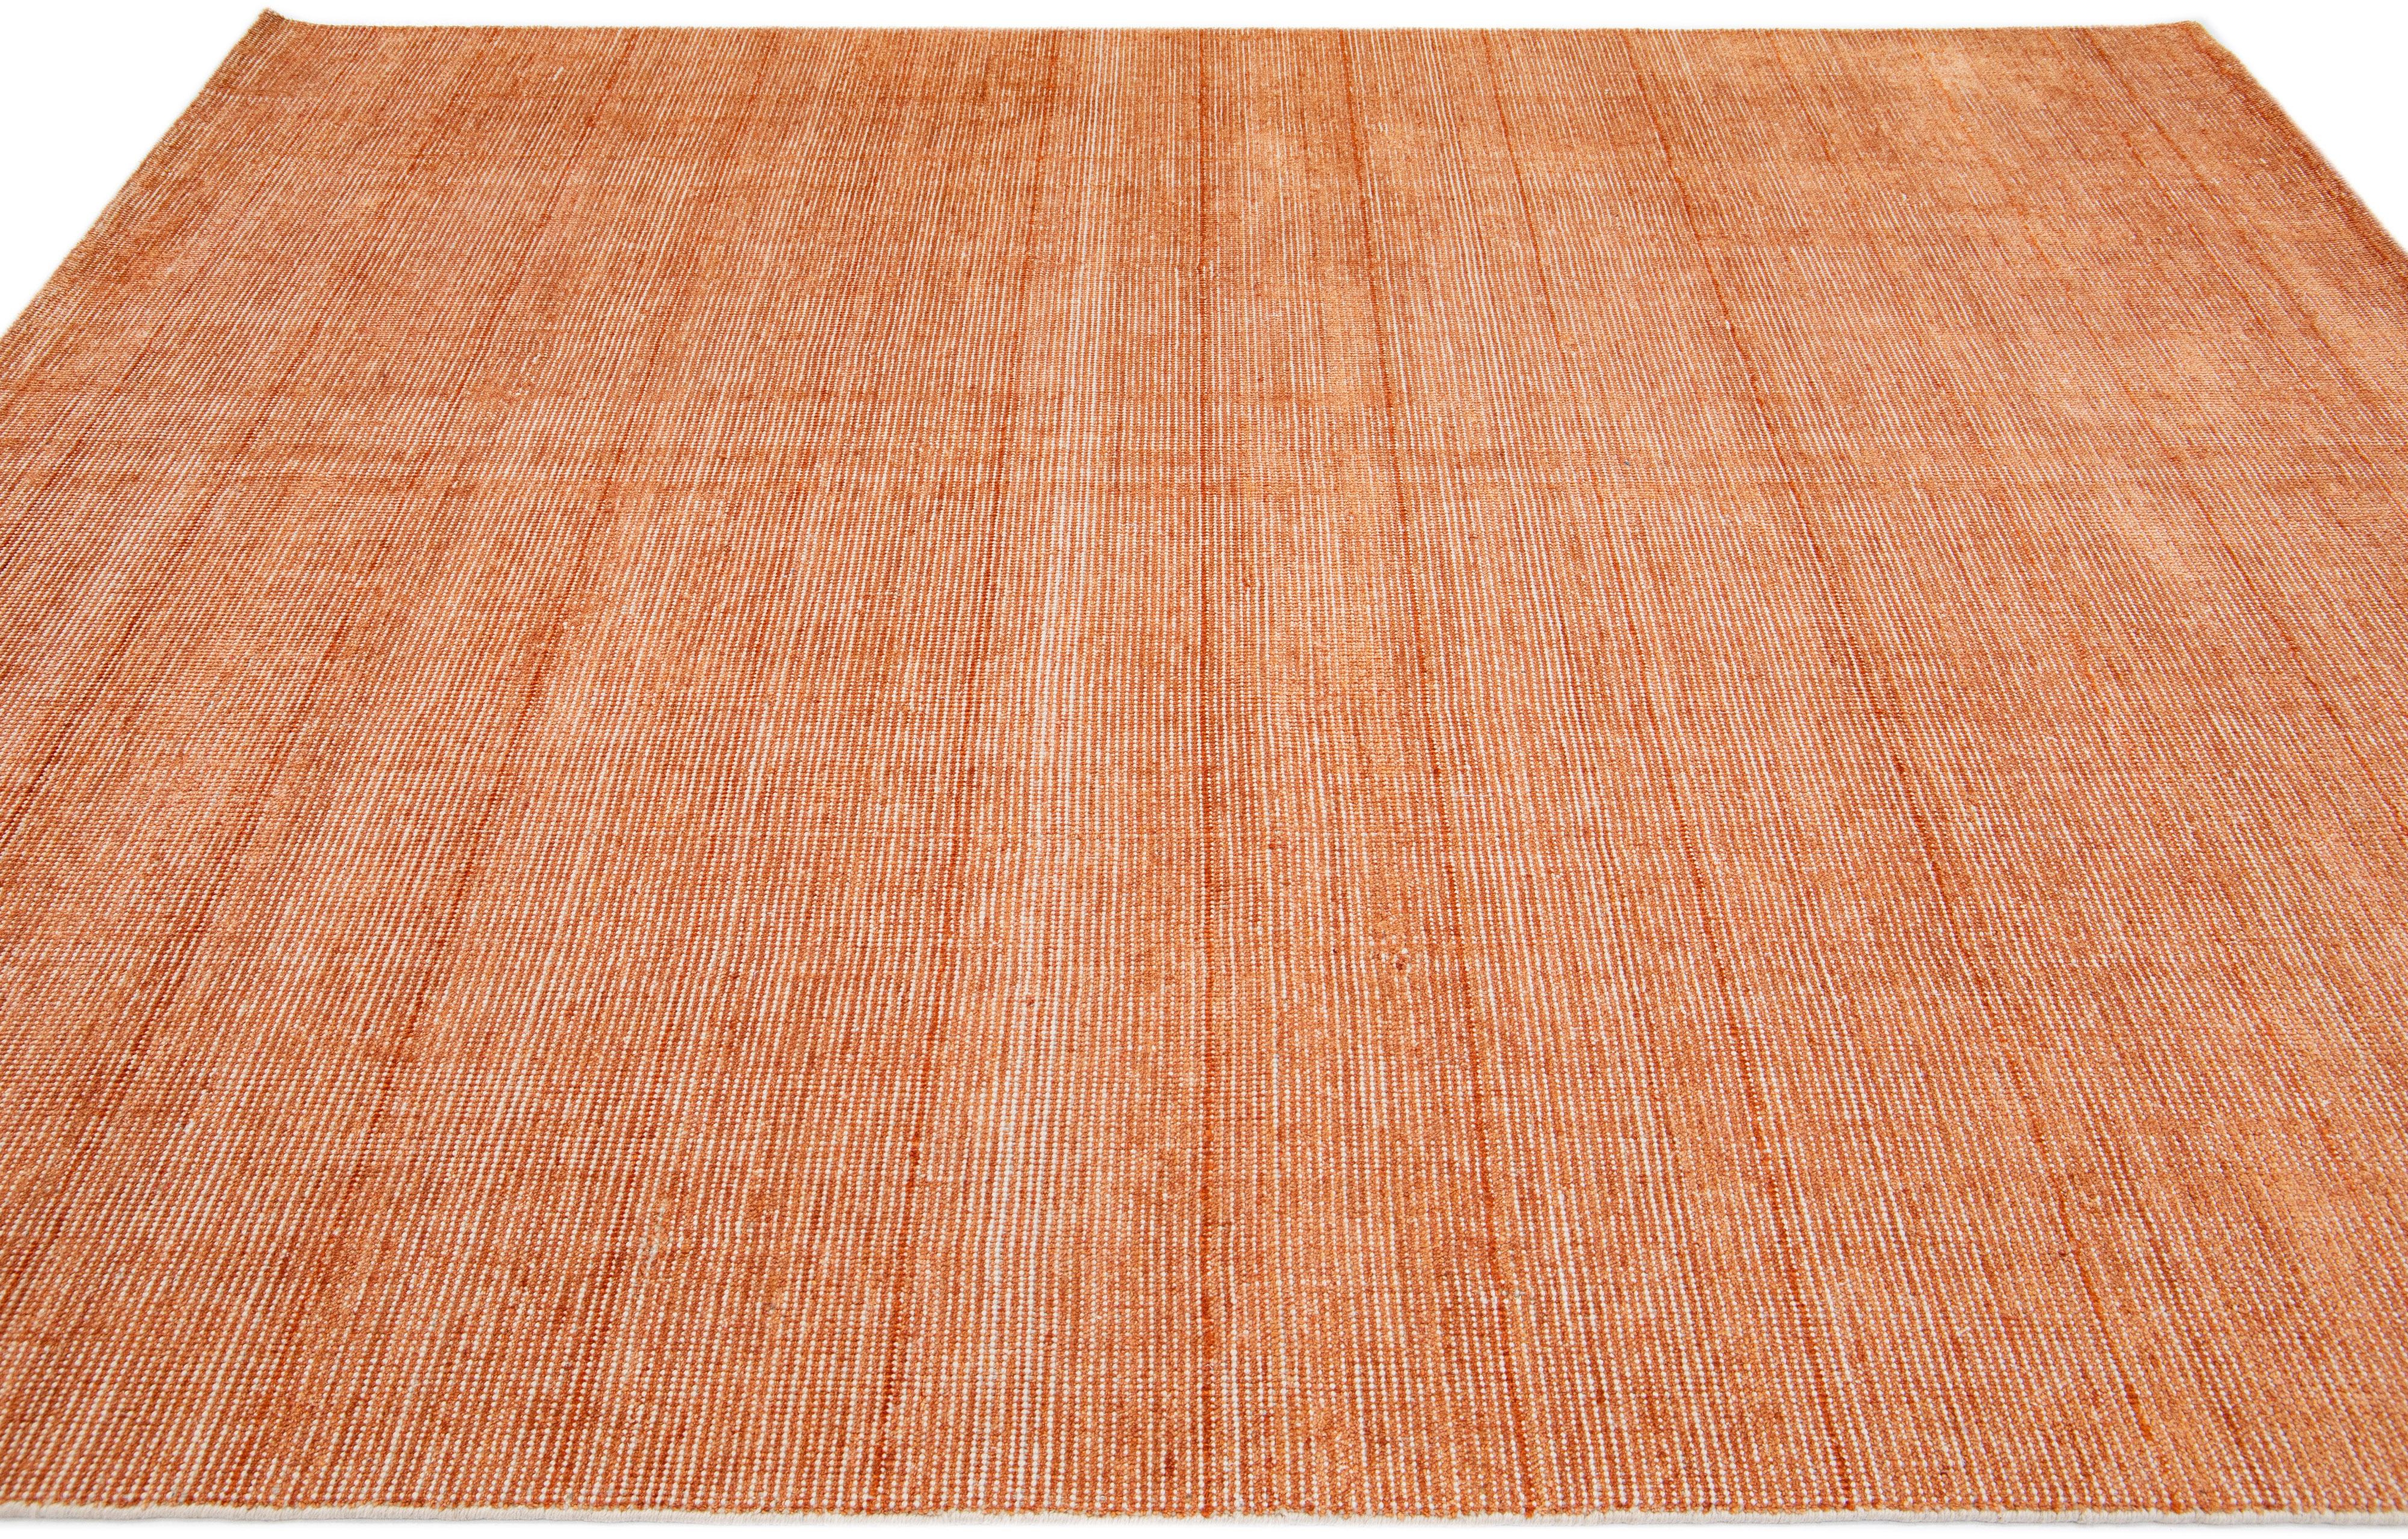 Wunderschöner handgefertigter indischer Rillenteppich aus Bambus, Seide und Wolle von Apadana mit einem orangefarbenen Feld. Dieser Teppich aus der Groove Collection hat ein Allover-Muster.

Dieser Teppich misst 8' x 10'.

Kundenspezifische Farben